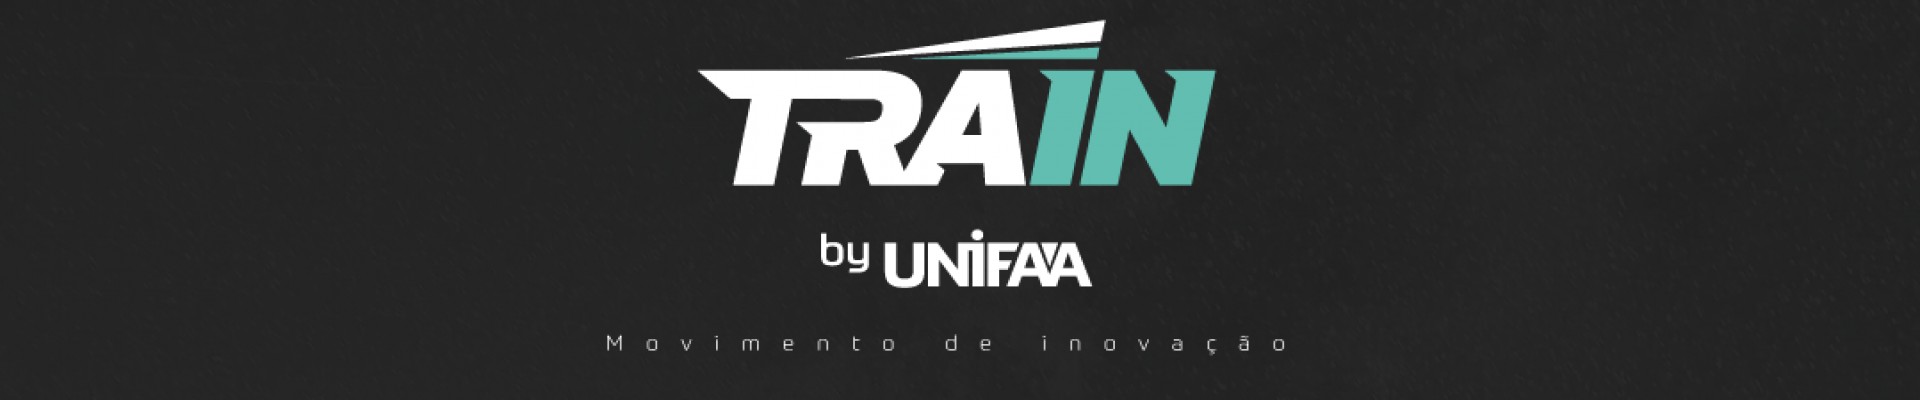 TRAIN - Movimento de inovação UNIFAA